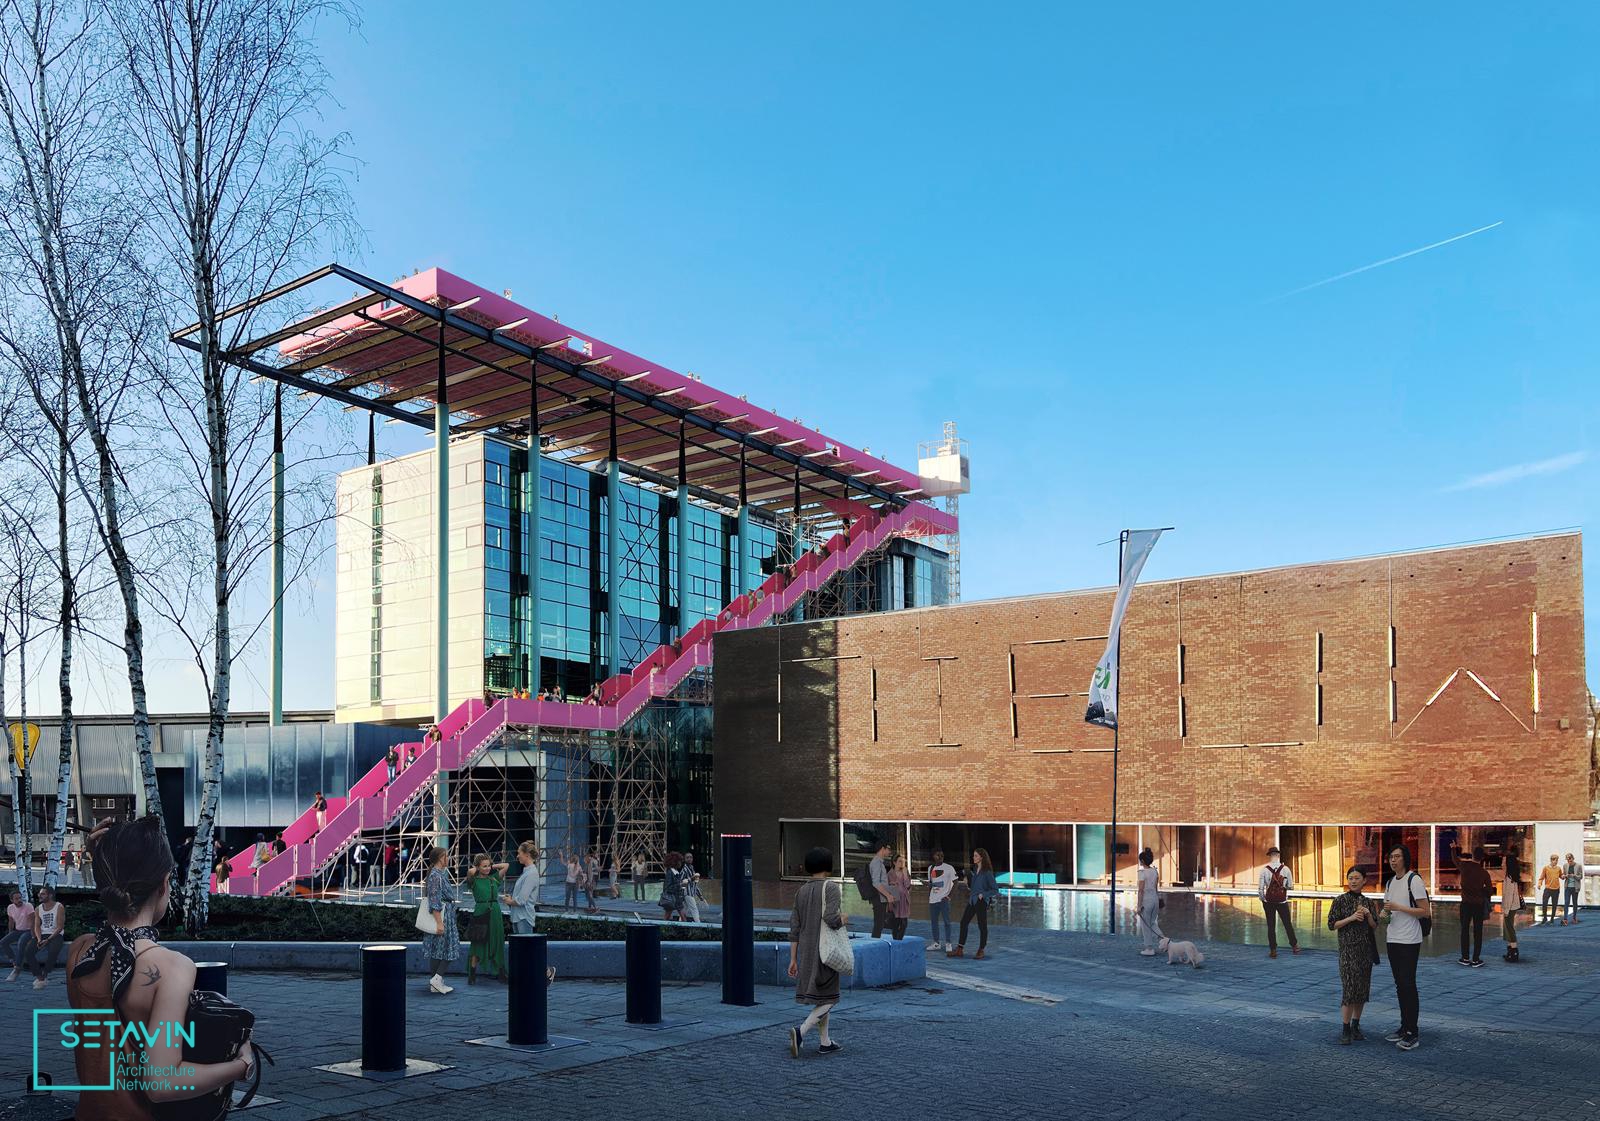 طراحی یک پشت بام صورتی موقت برای موسسه het nieuwe در روتردام توسط MVRDV